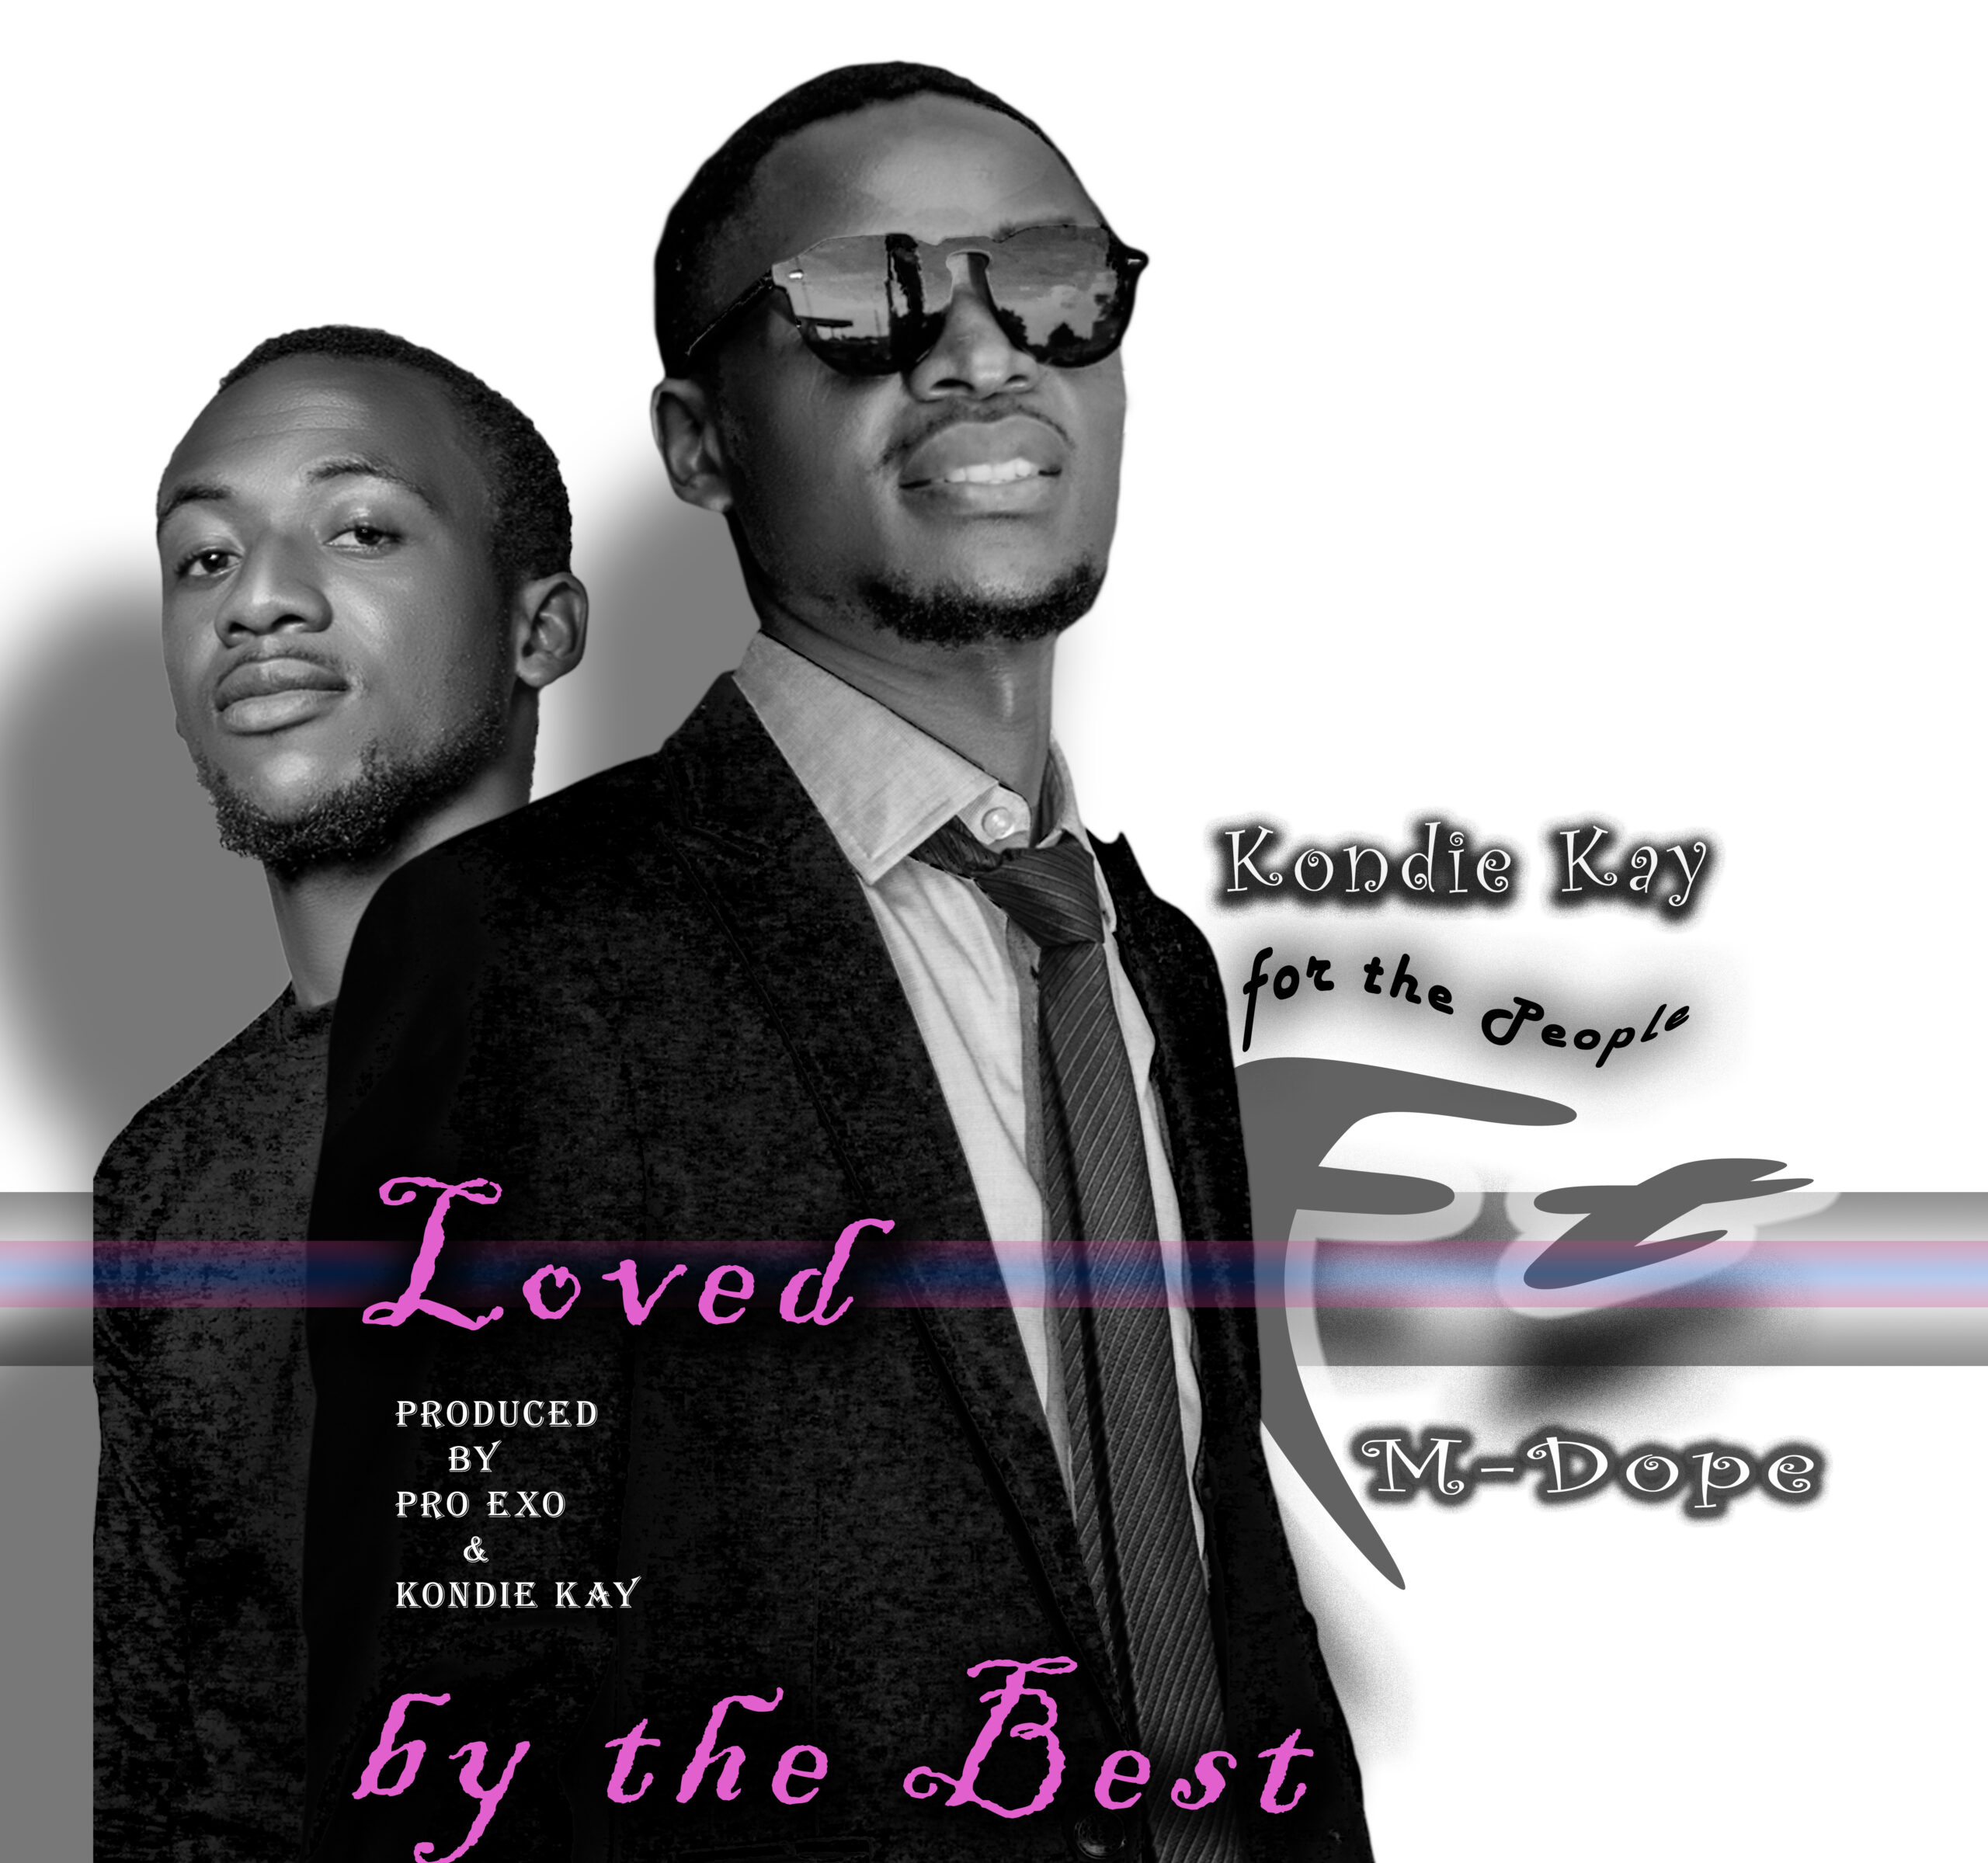 Kondie kay ft M Dope - Loved by The Best (Prod. Pro Exo & Kondie Kay)